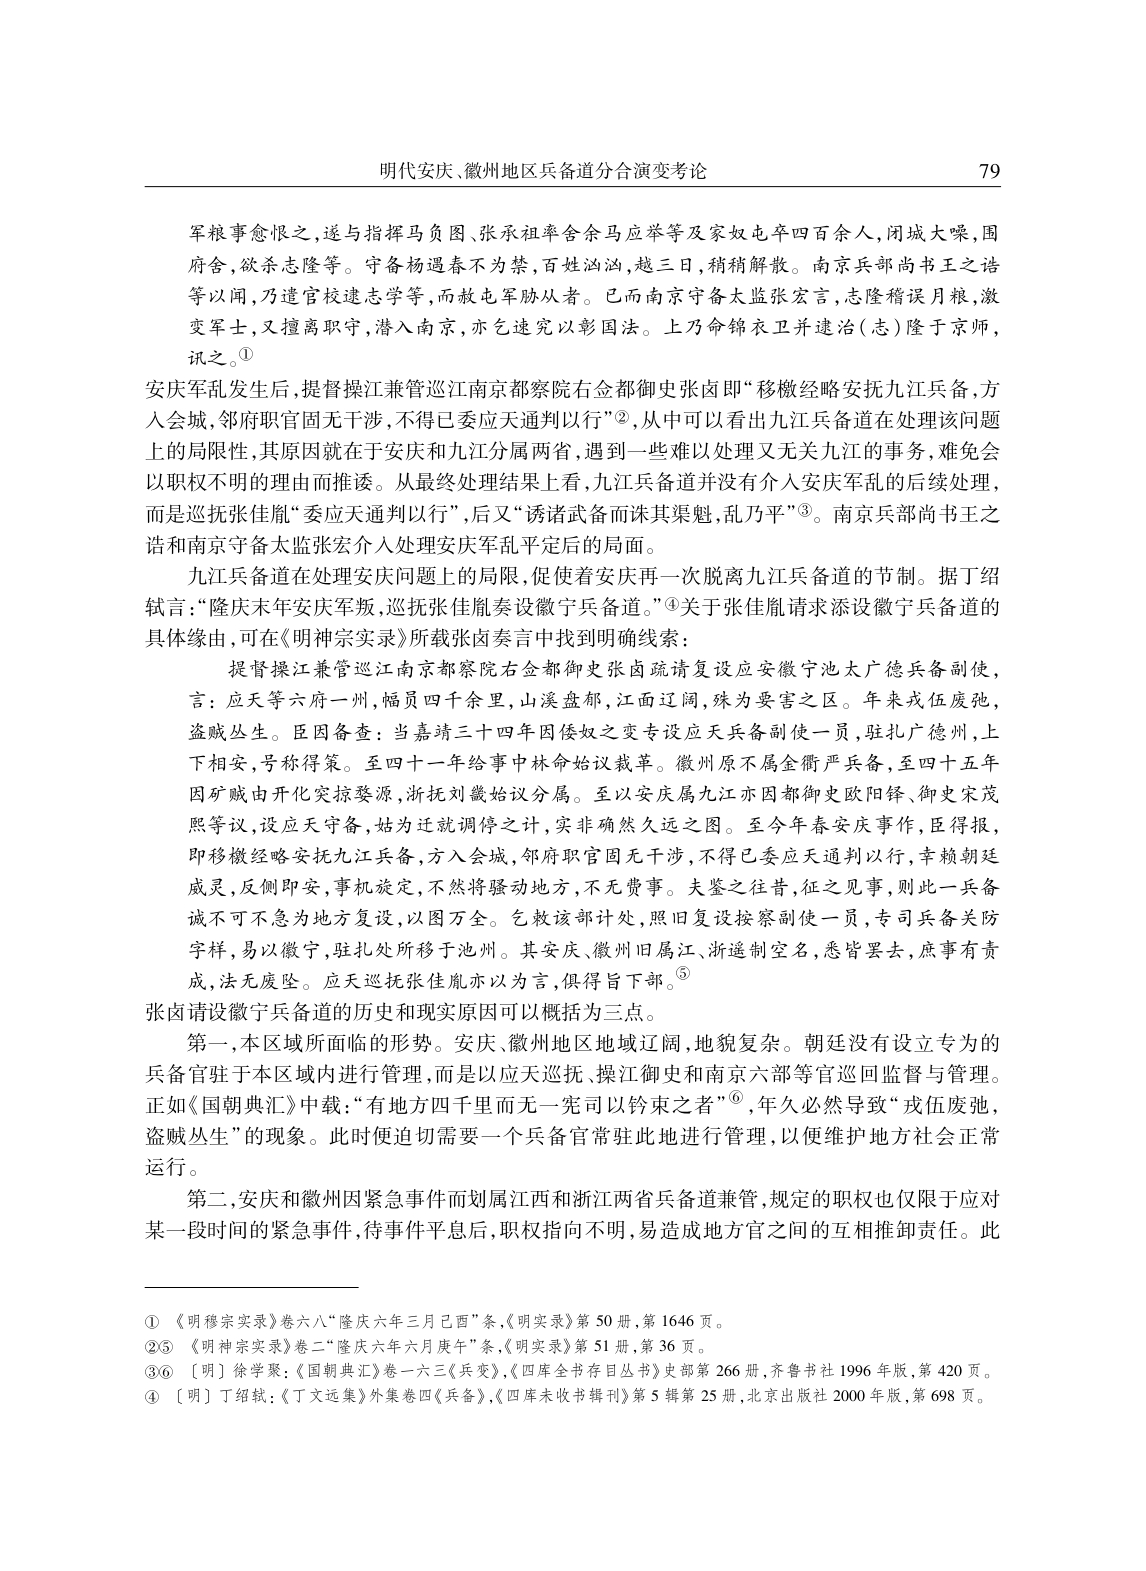 明代安庆、徽州地区兵备道分合演变考论_page-0008.jpg